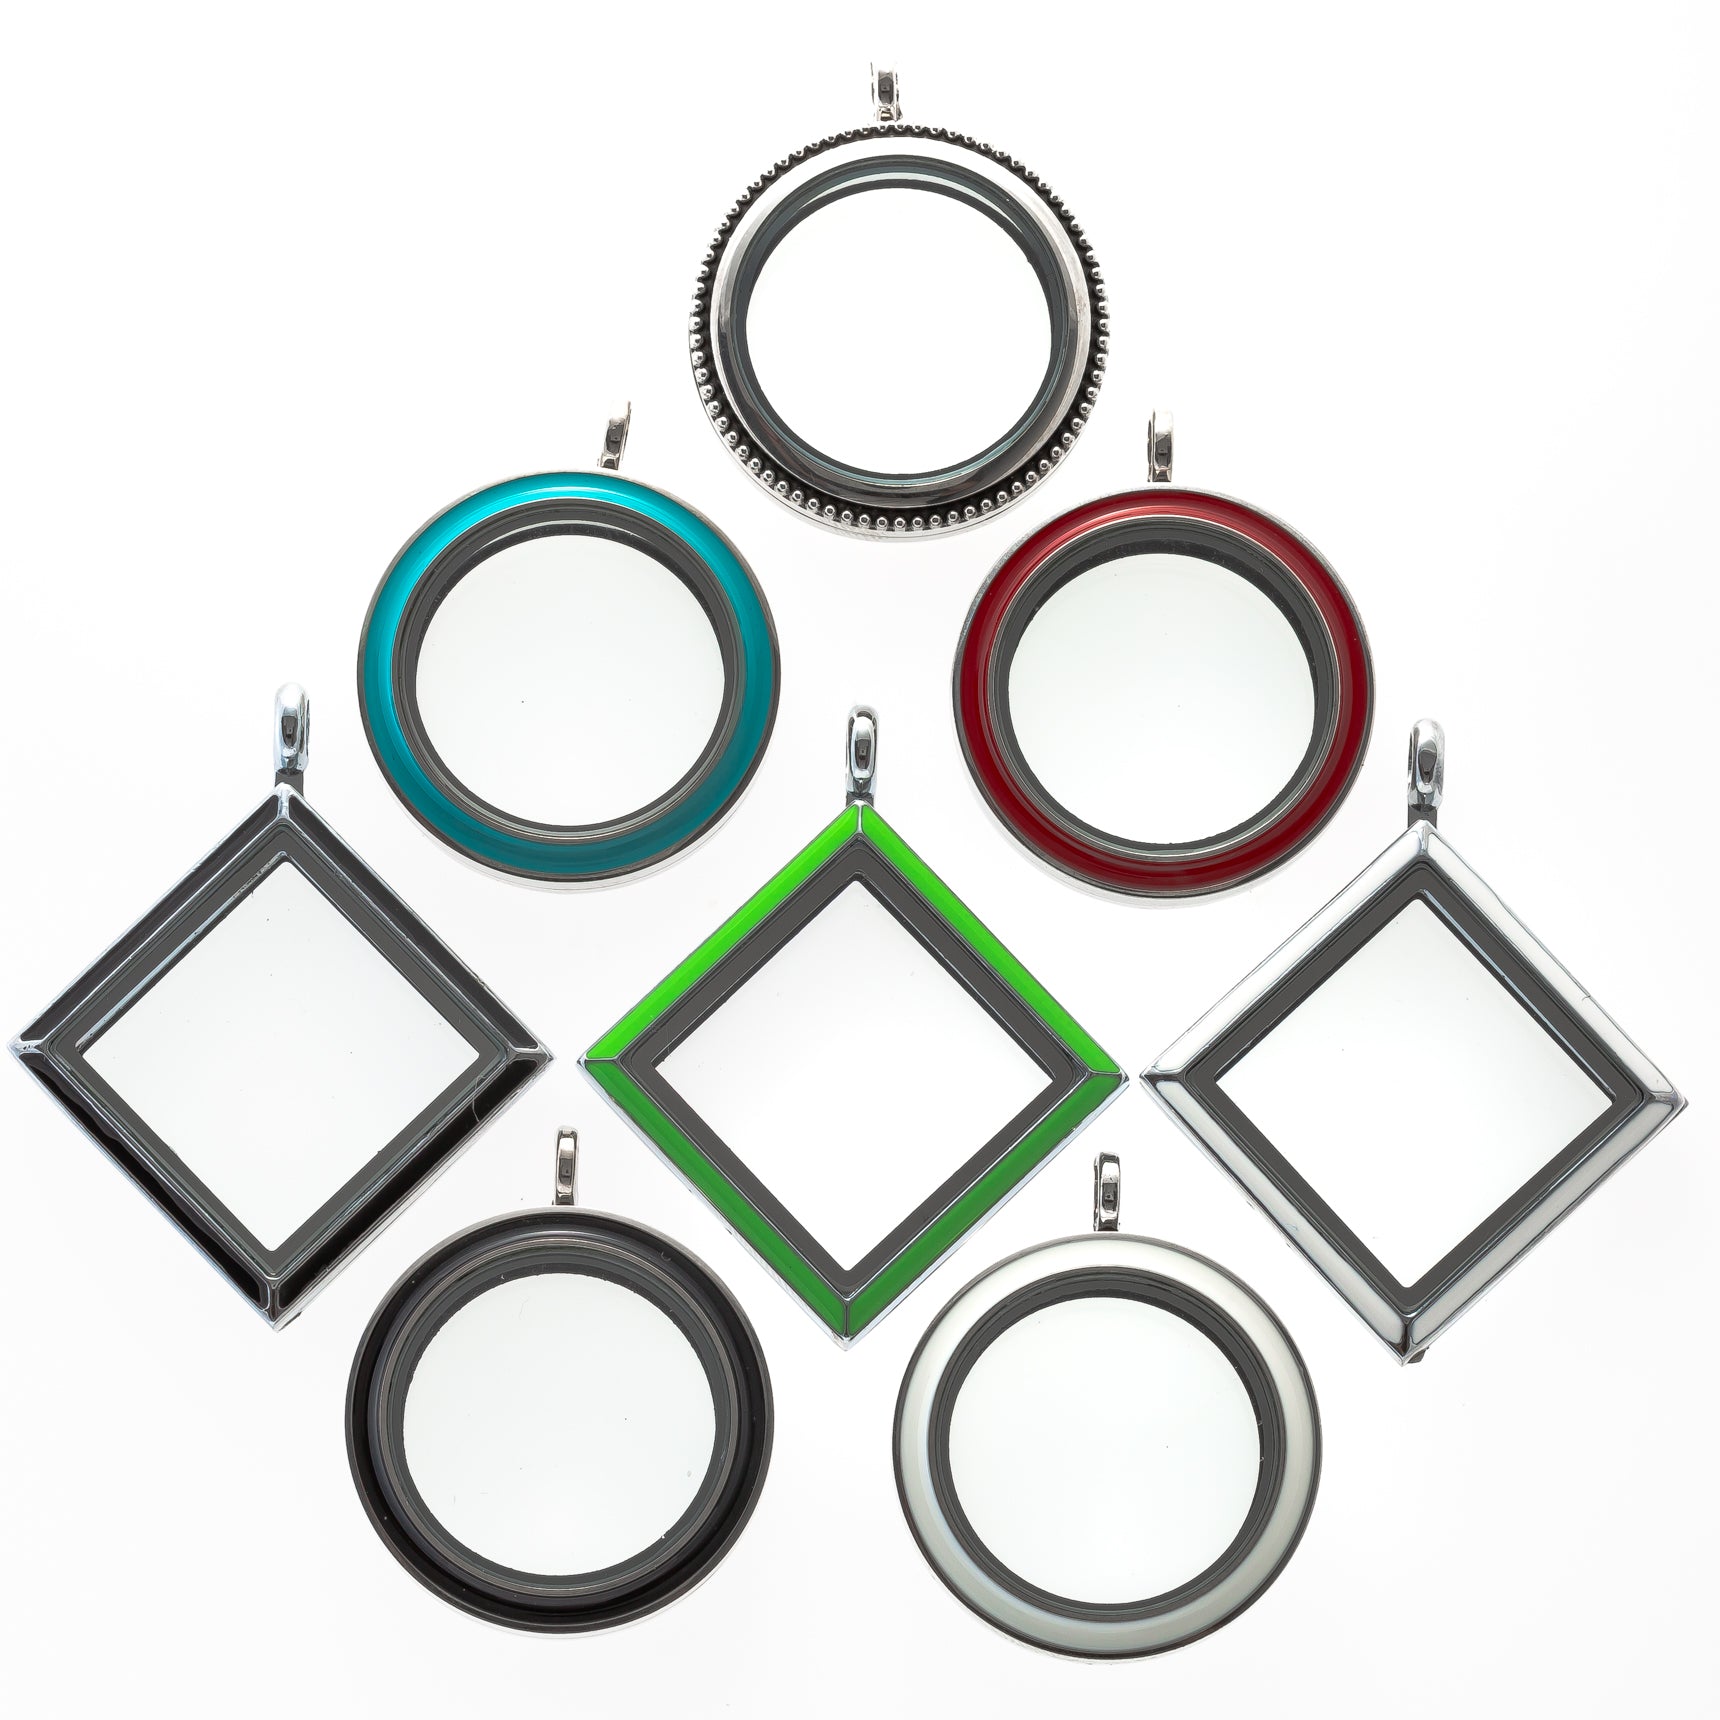 Paquete de 8 medallones magnéticos de vidrio con formas y colores abatibles hacia arriba y giratorios